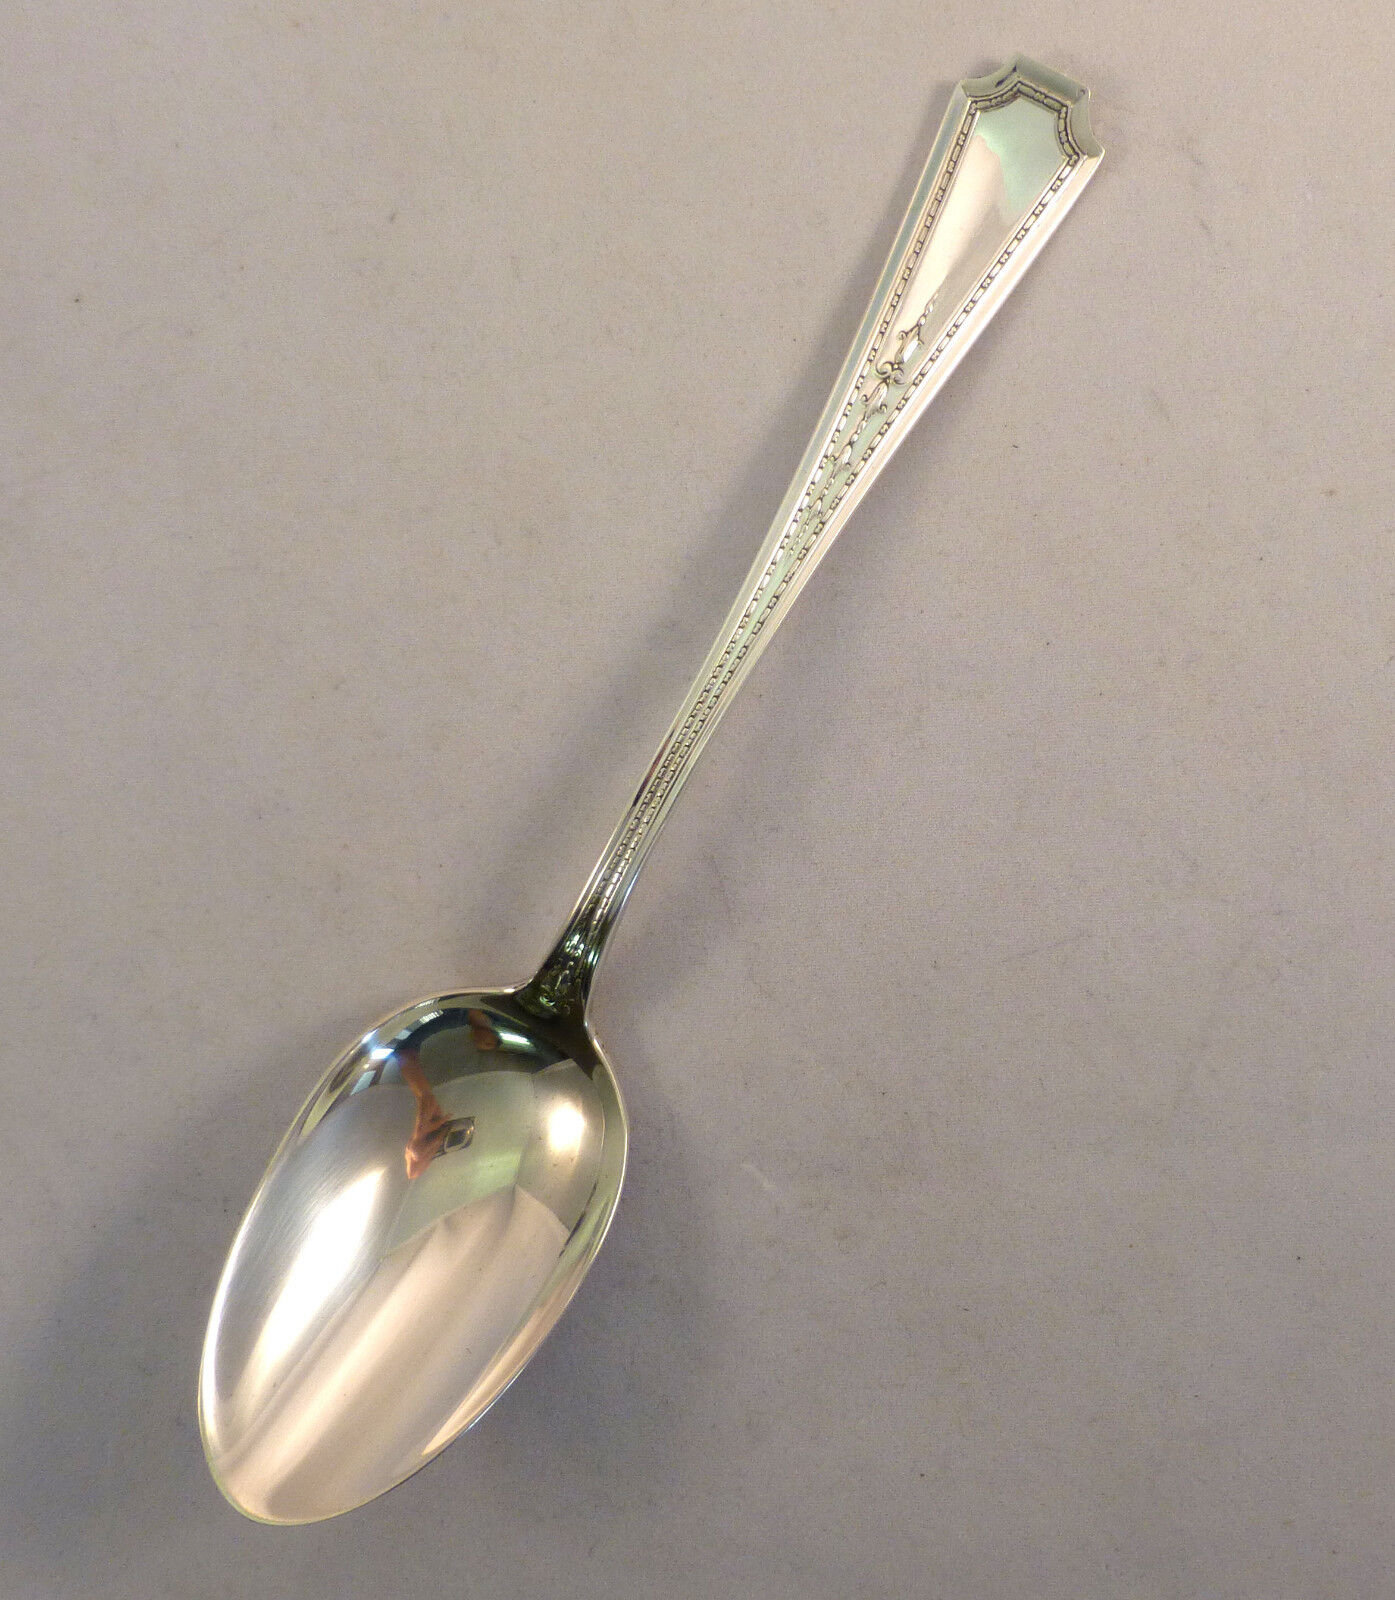 Colfax-Gorham Sterling Dessert Spoon